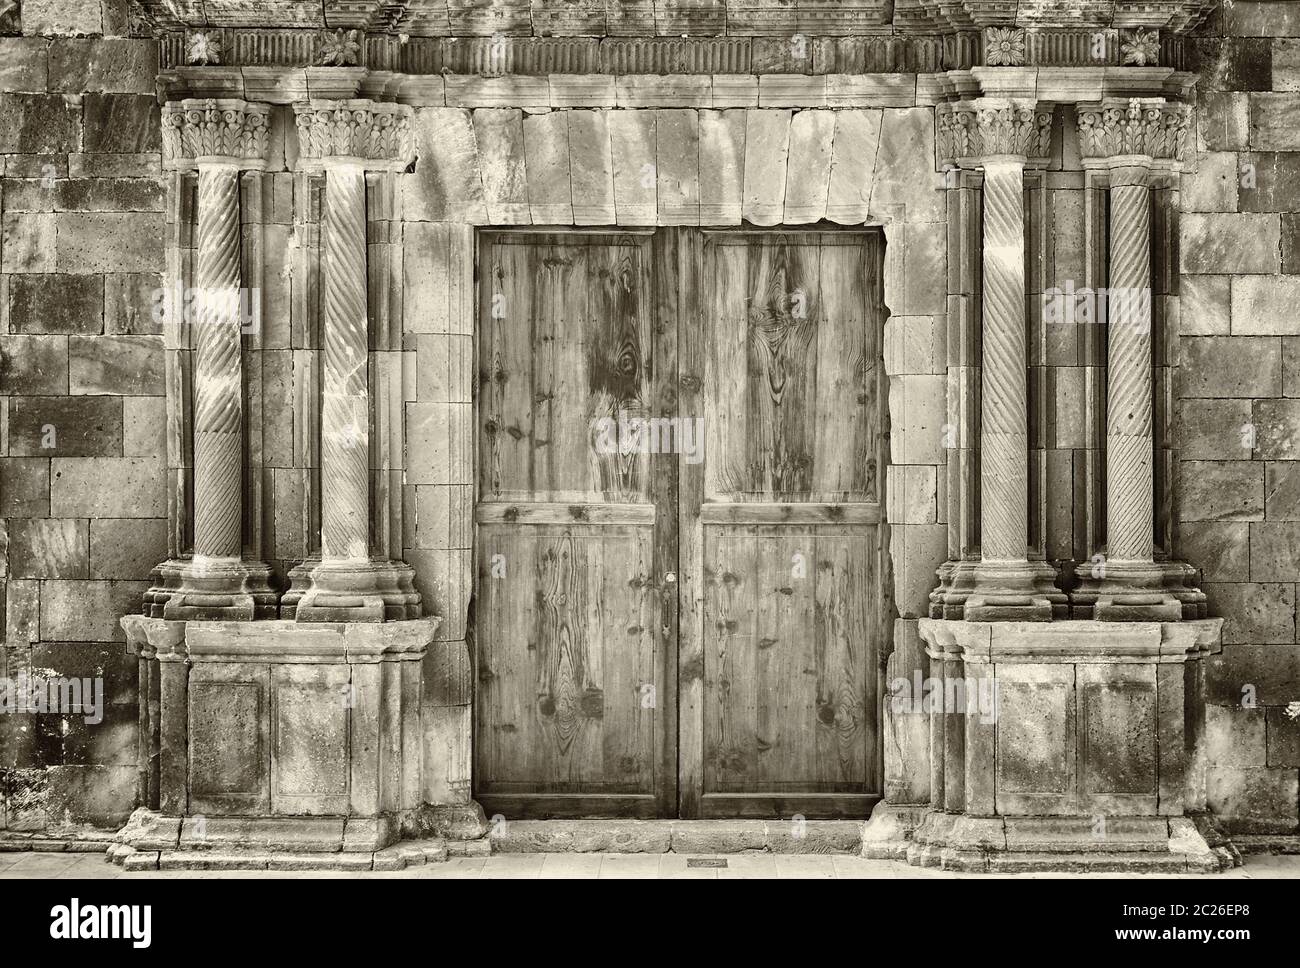 sépia monochrome anciennes portes doubles en bois dans un ancien bâtiment en pierre avec des colonnes ornées en ruines entourant l'entrée Banque D'Images